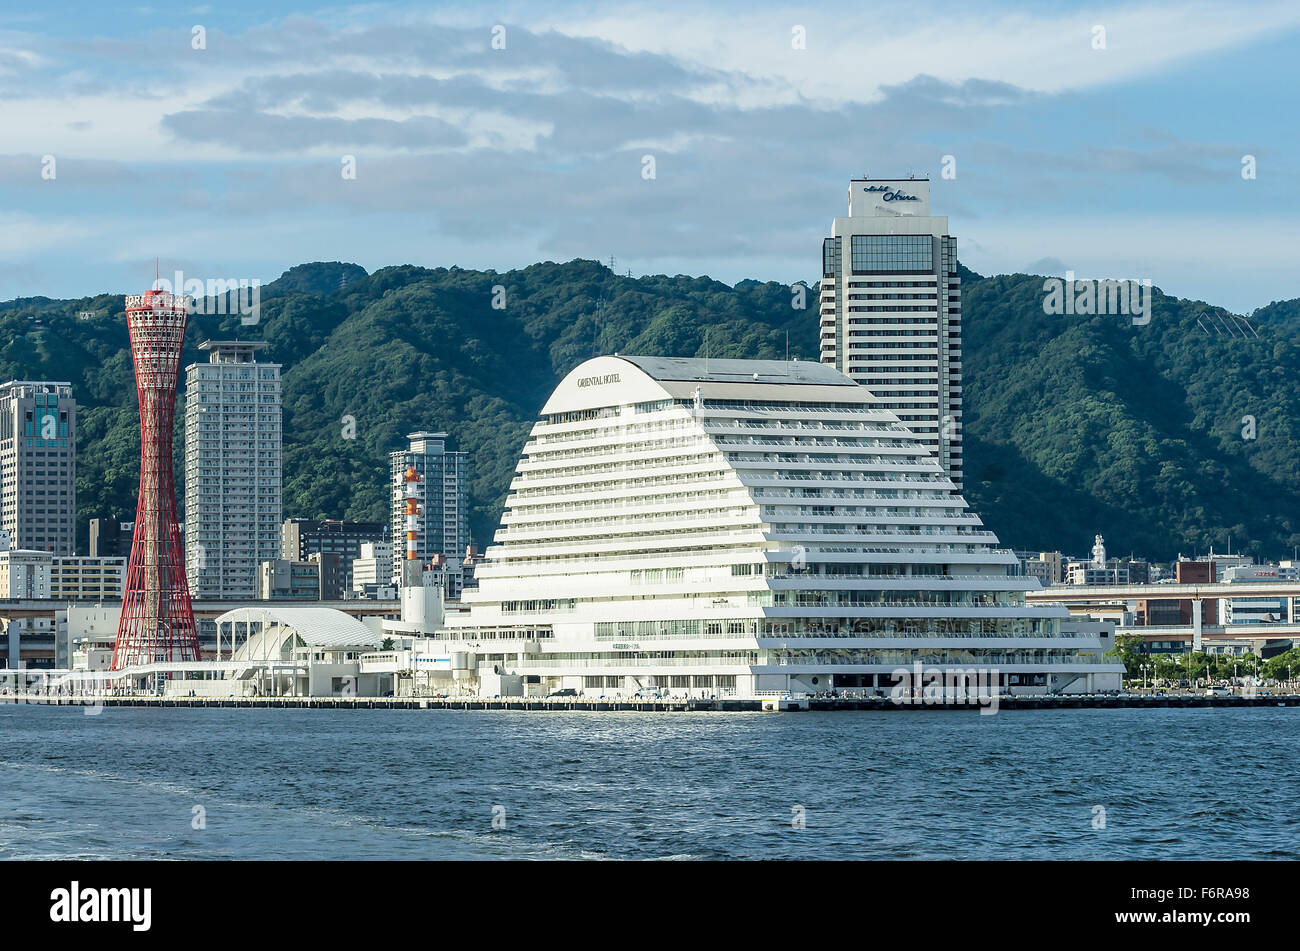 Harbour scene, tower, Port of Kobe, Honshu, Japan Stock Photo